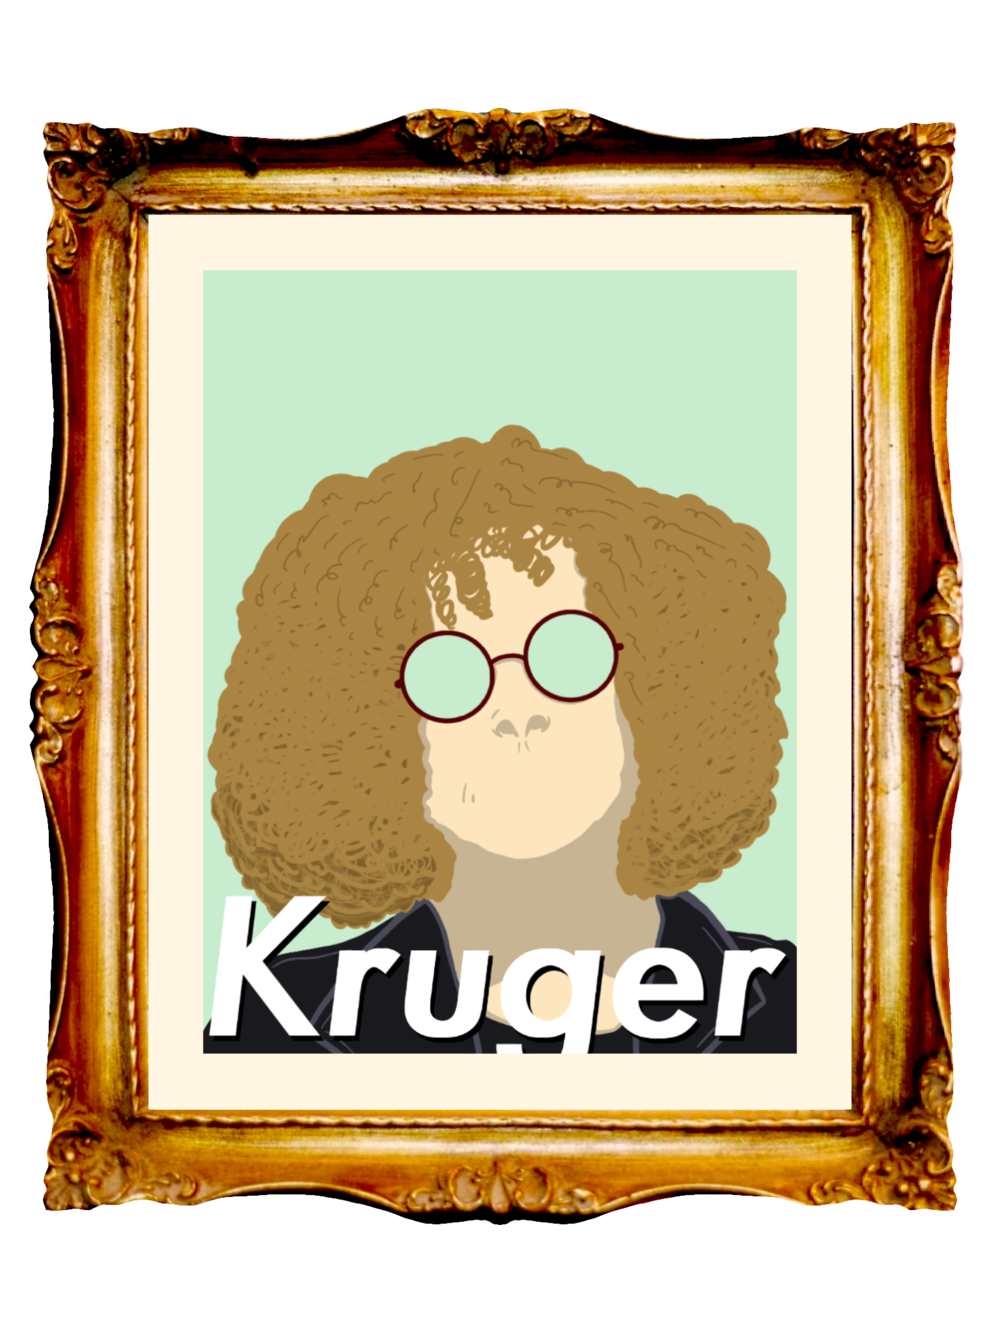 BARBARA KRUGER - KRUGER* - Limited Poster by BOYSDONTDRAW